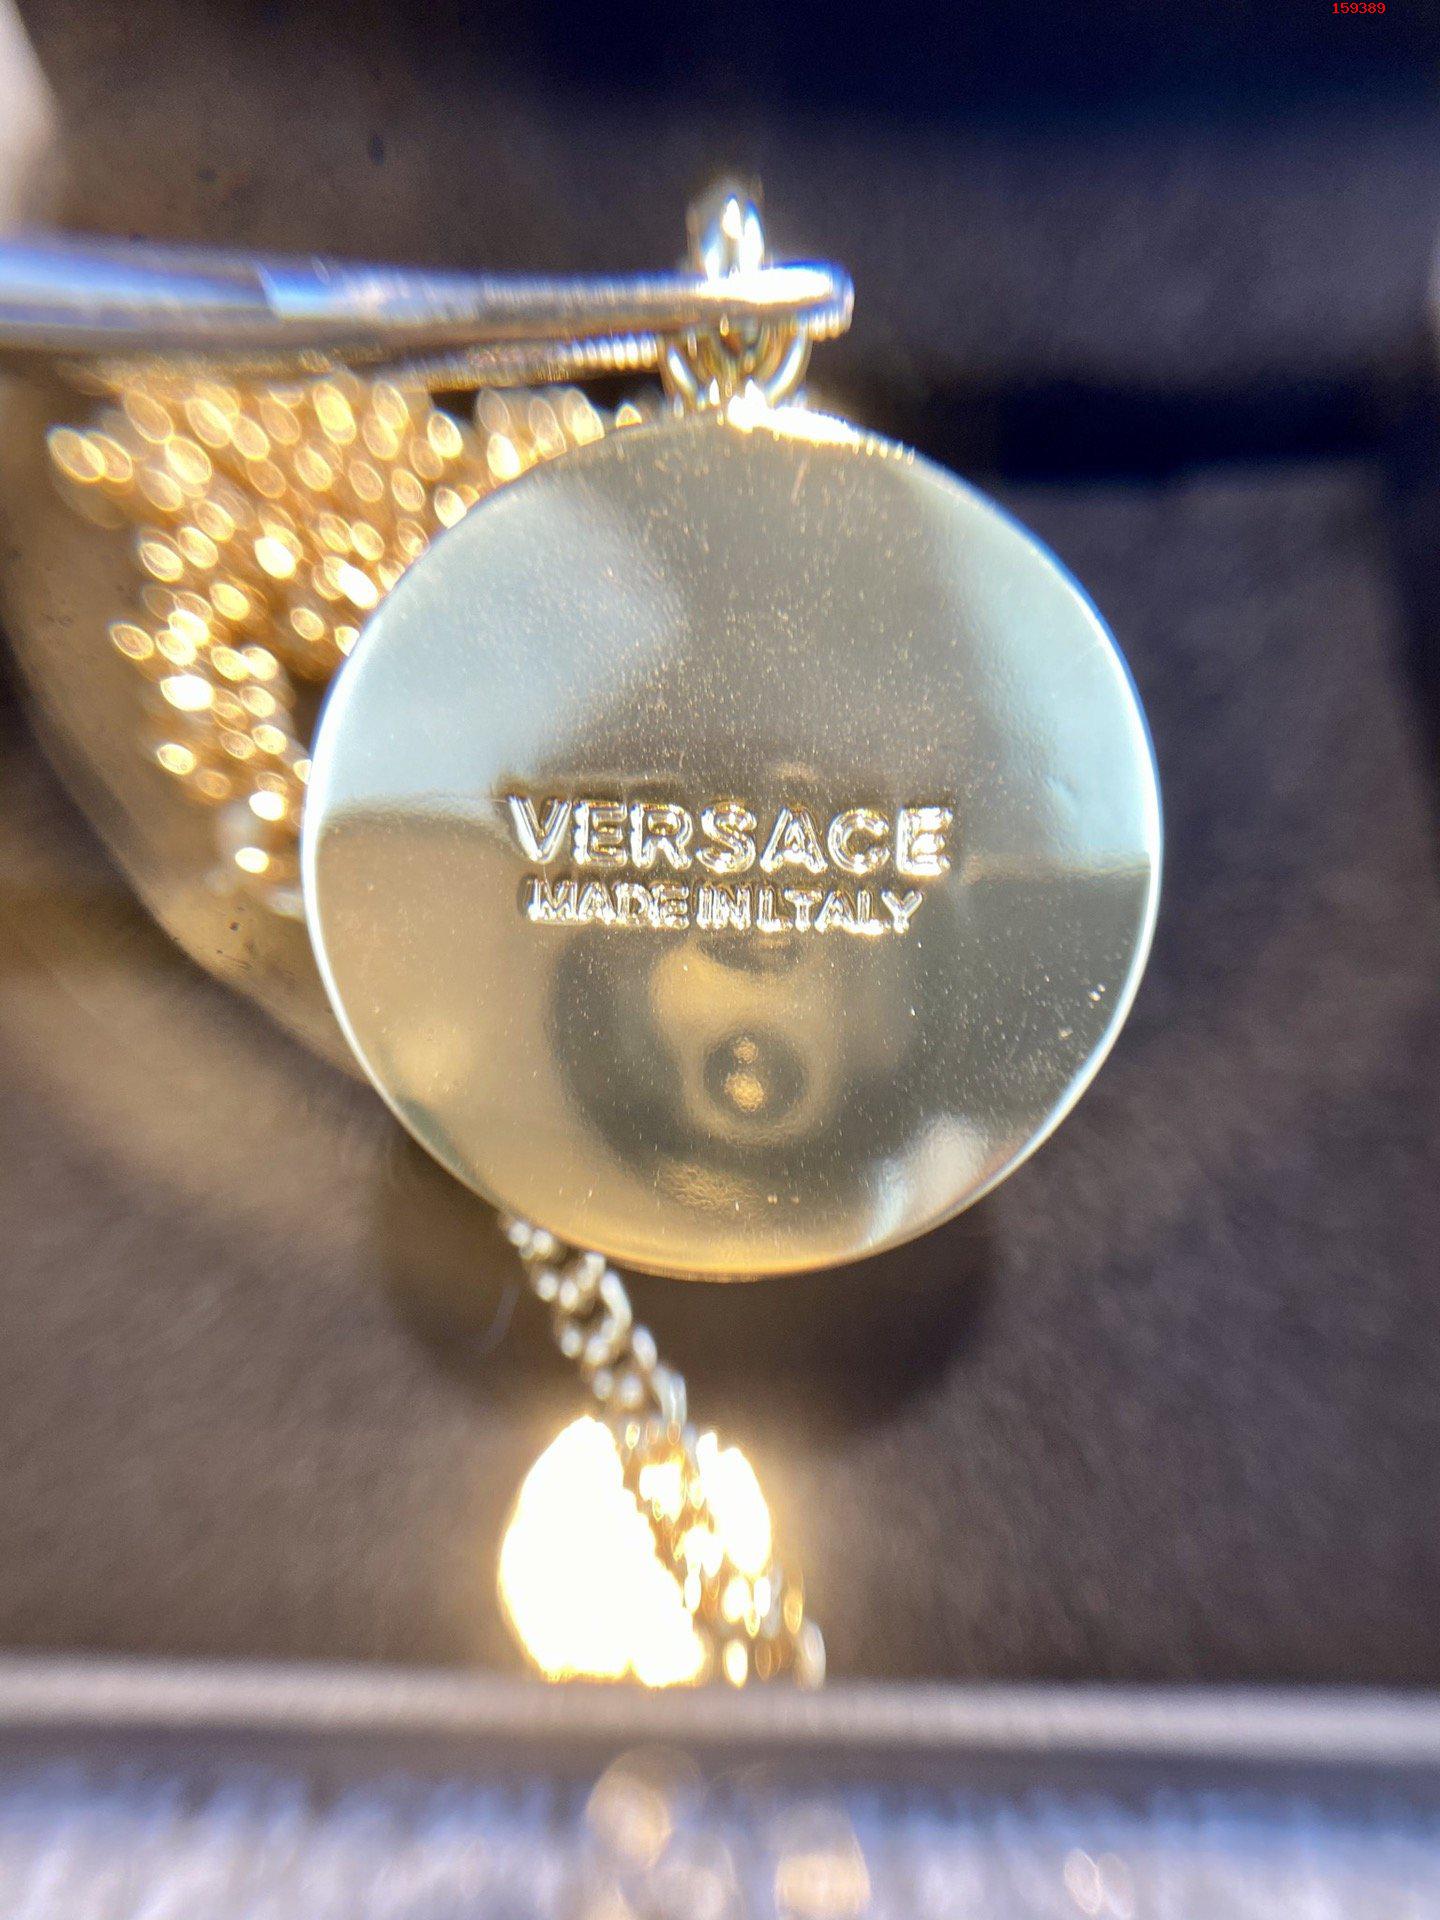 Versace范思哲项链品牌标志是神 高仿名牌手镯/手链 精仿名牌手镯/手链 原版名牌手镯/手链 A货名牌手镯/手链 原单名牌手镯/手链 